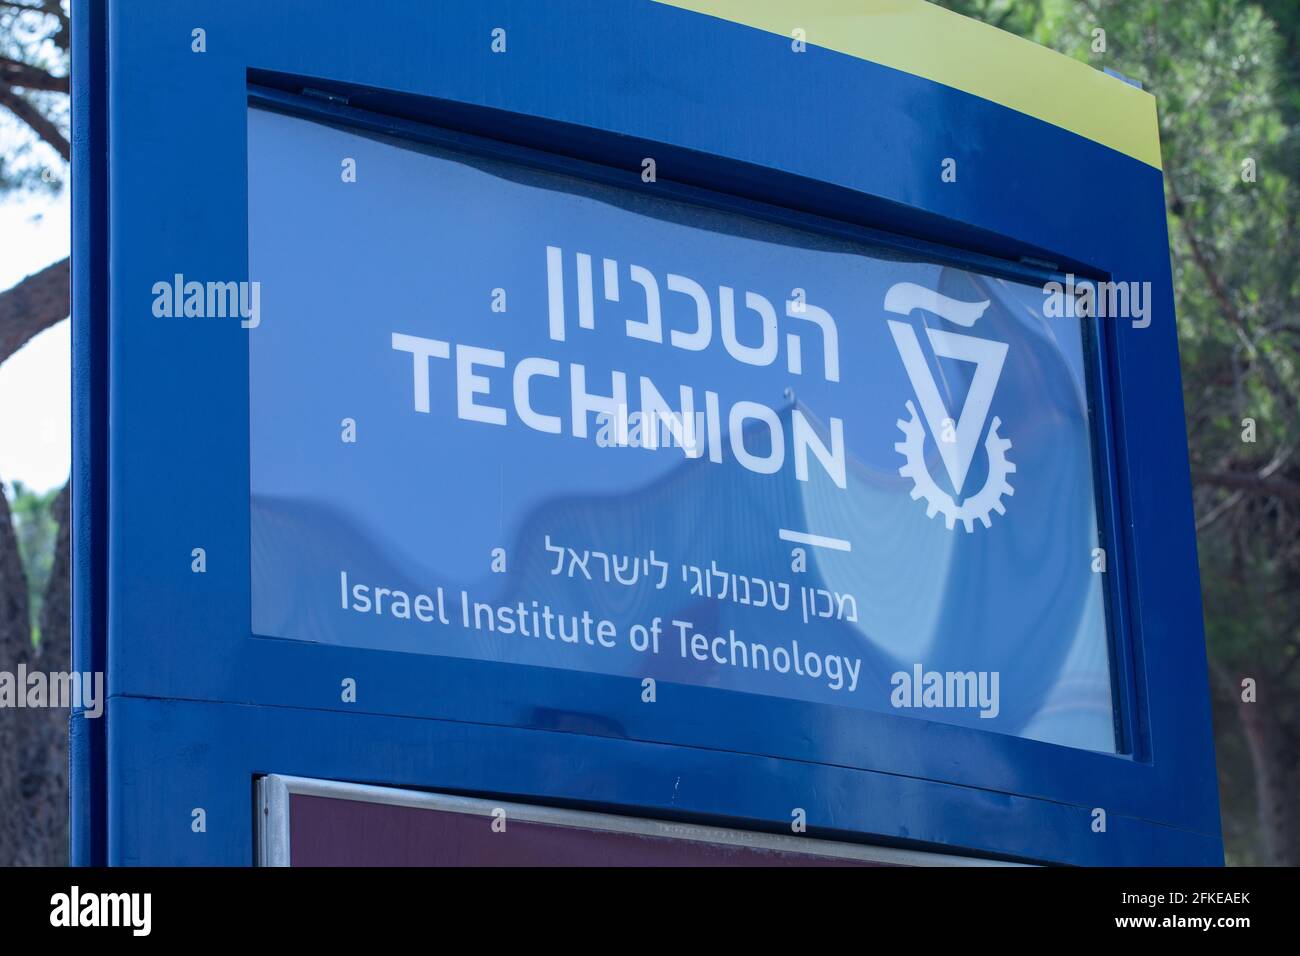 Das Technion, Israel Institute of Technology, eine öffentliche Forschungsuniversität in Haifa, Israel. Stockfoto